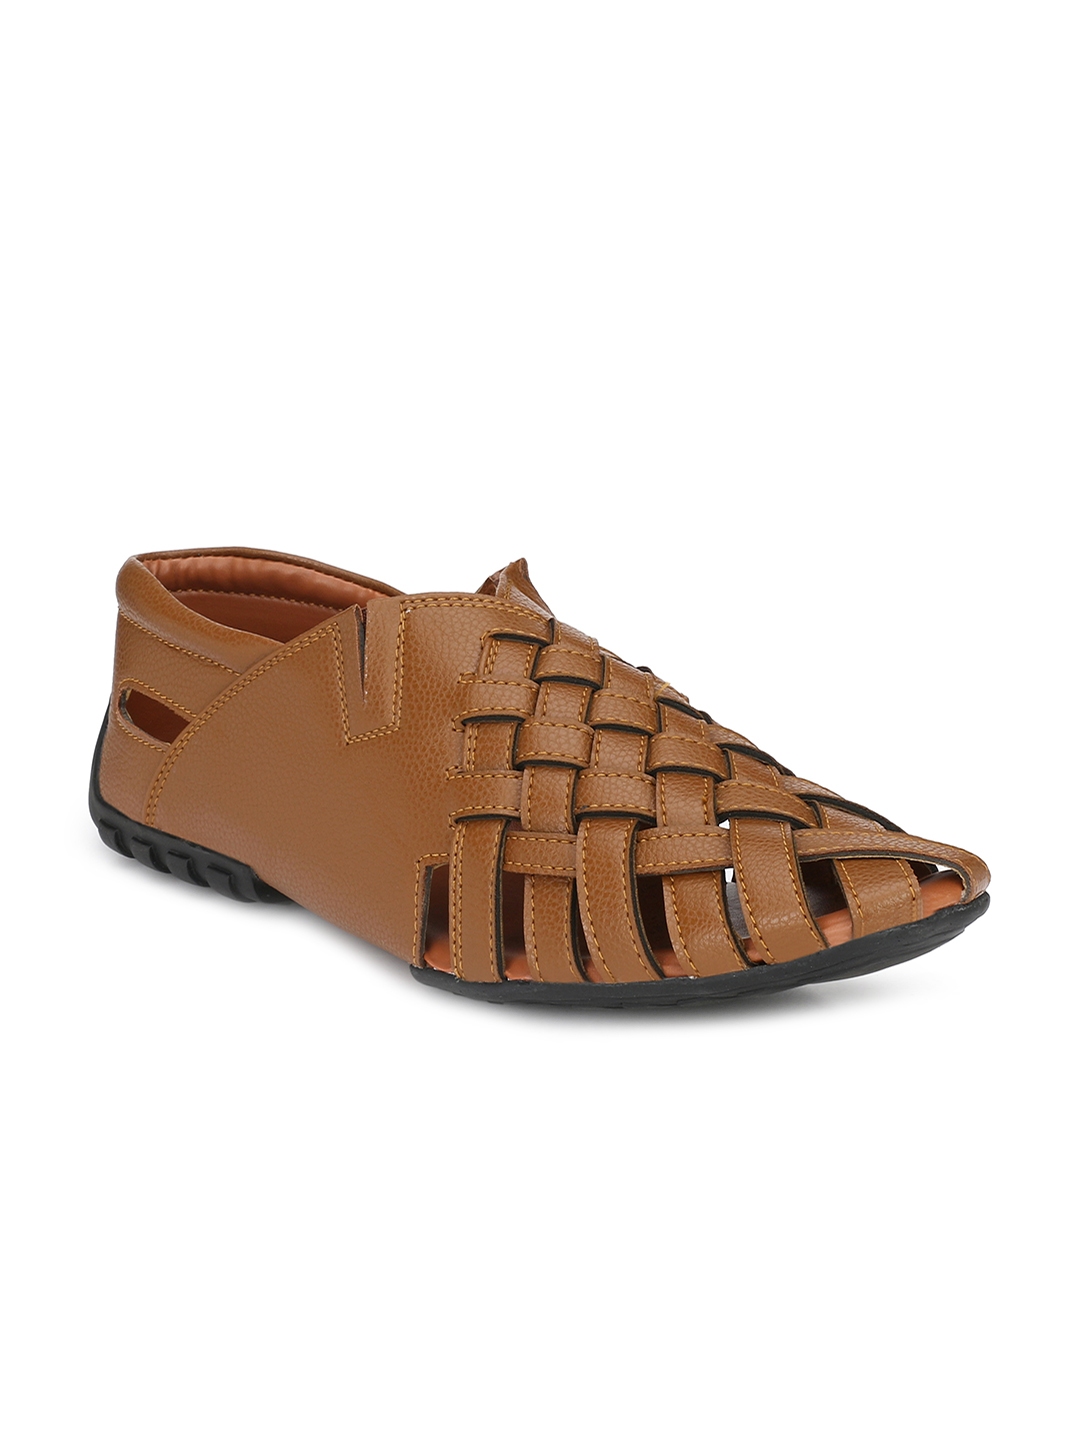 Buy Eego Italy Men Tan Comfort Sandals - Sandals for Men 7370510 | Myntra